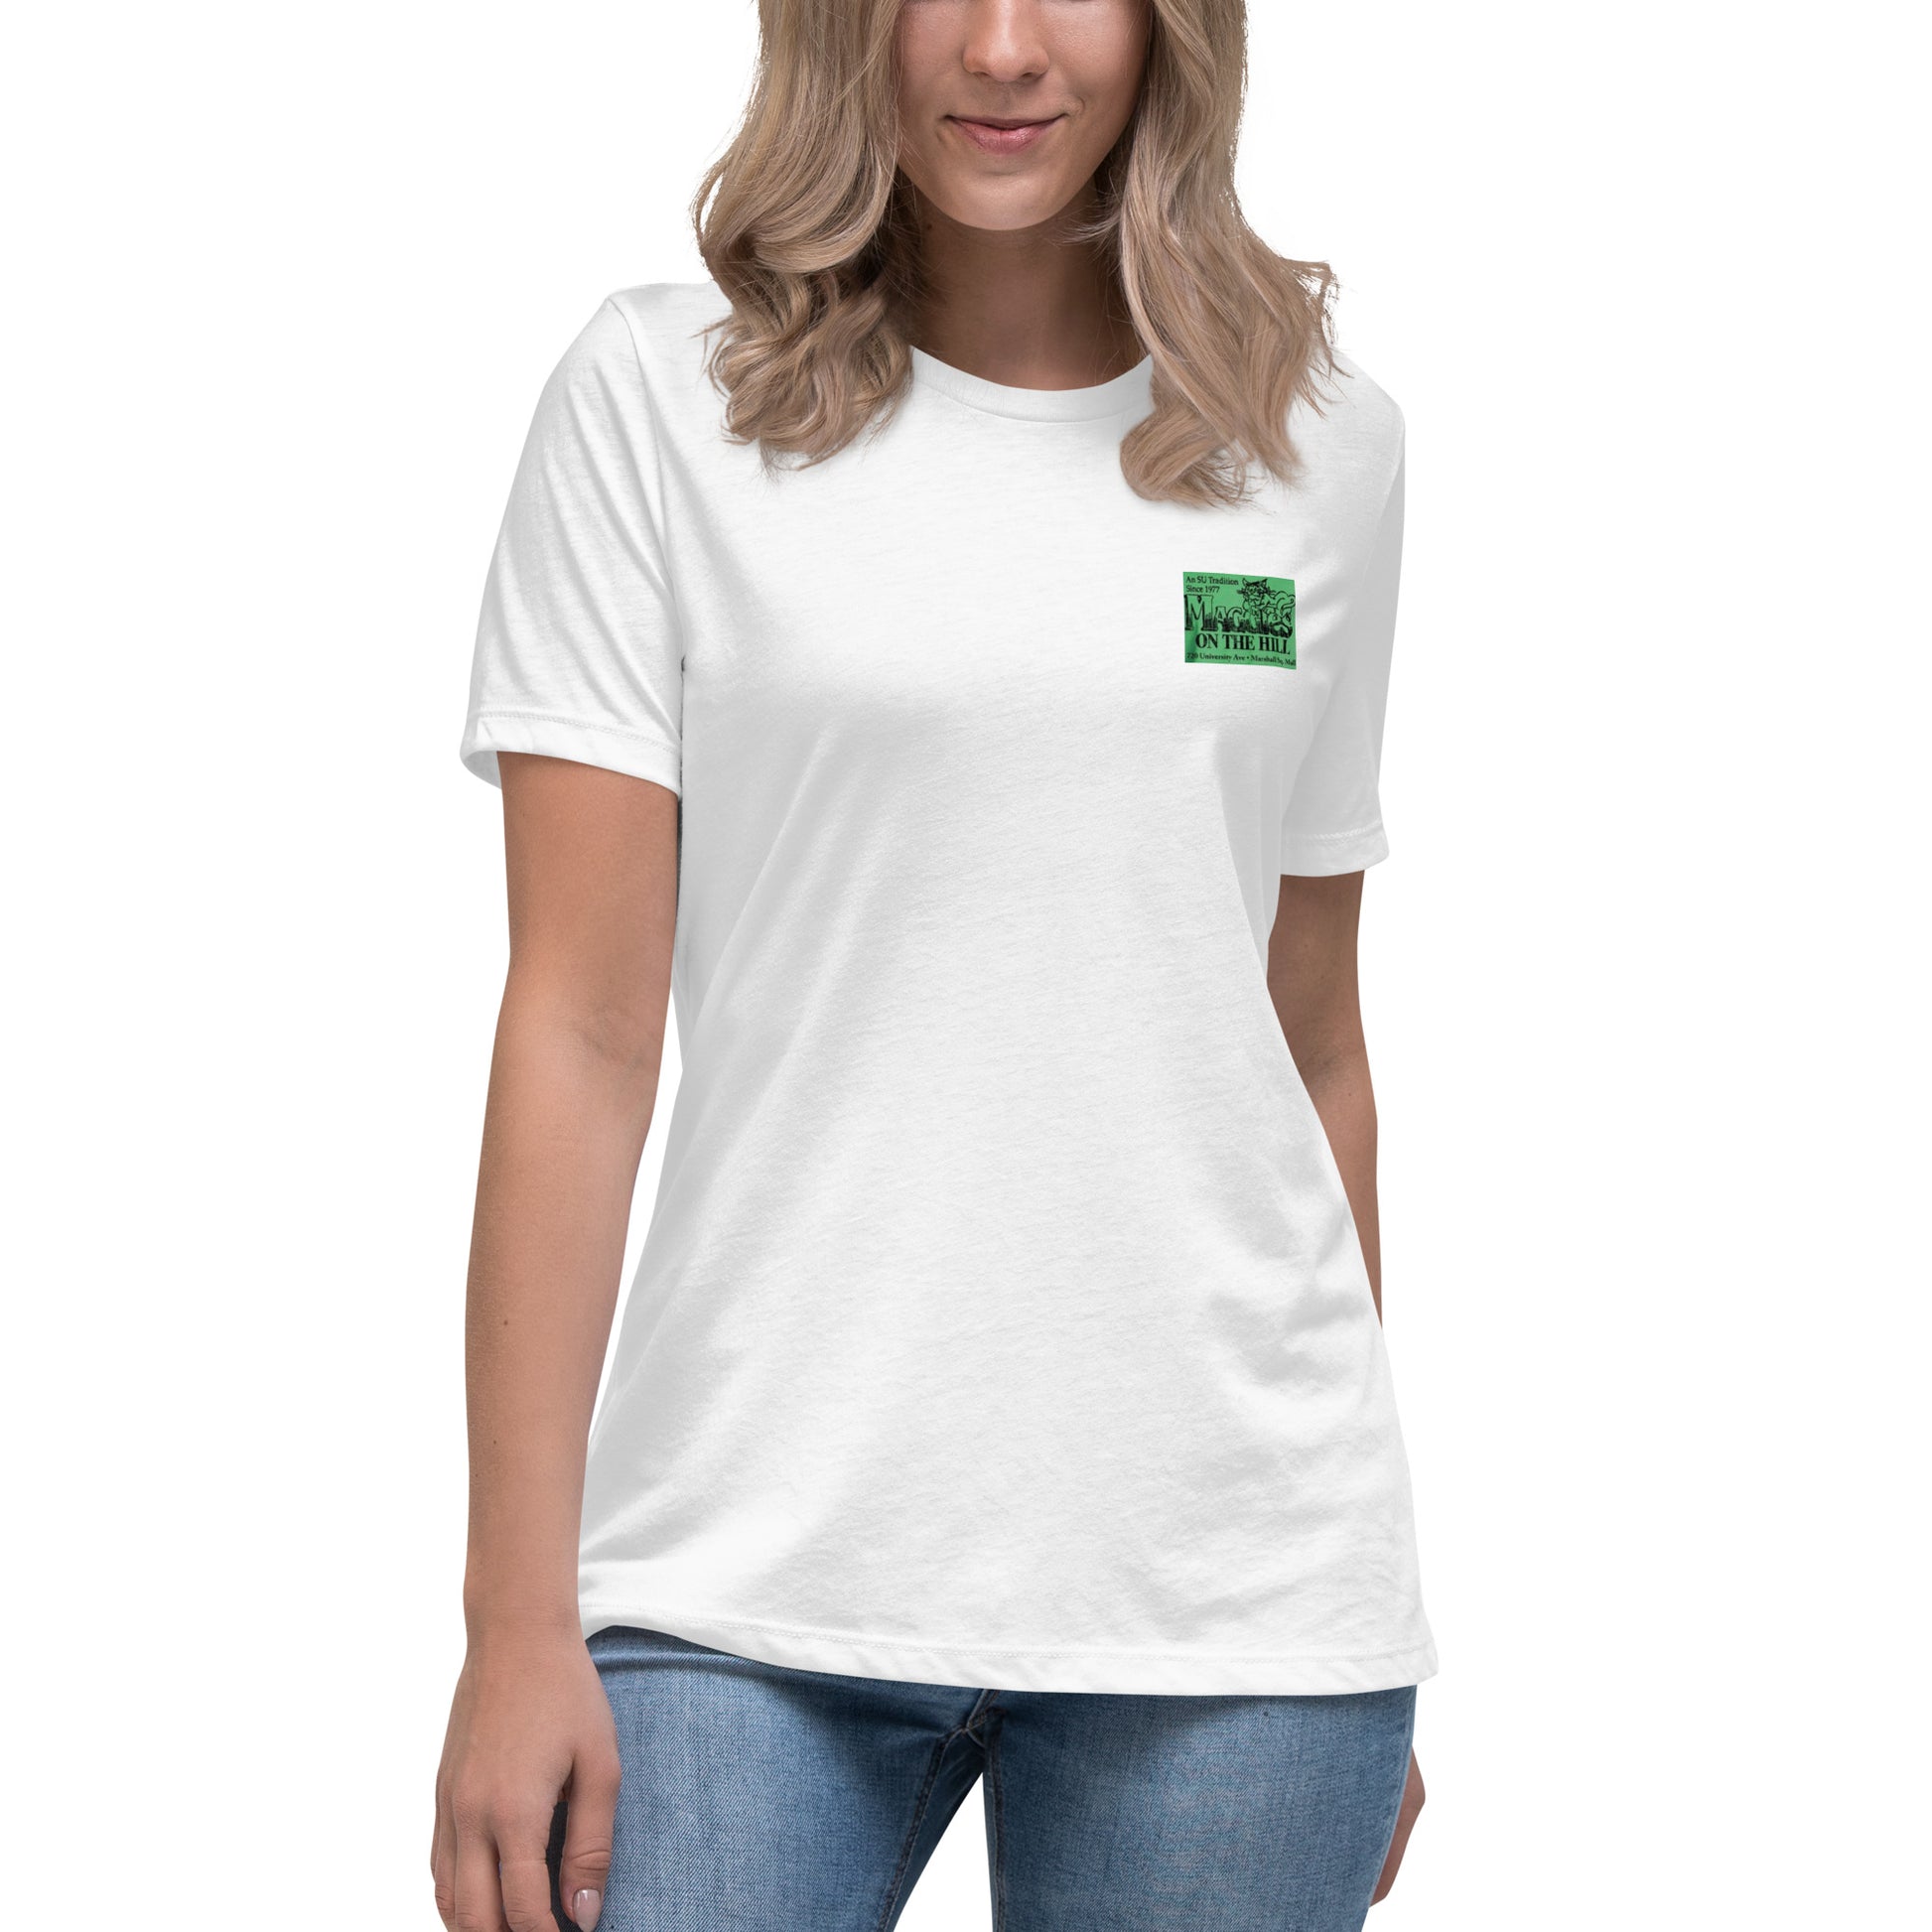 Women's white crew neck graphic tee shirt